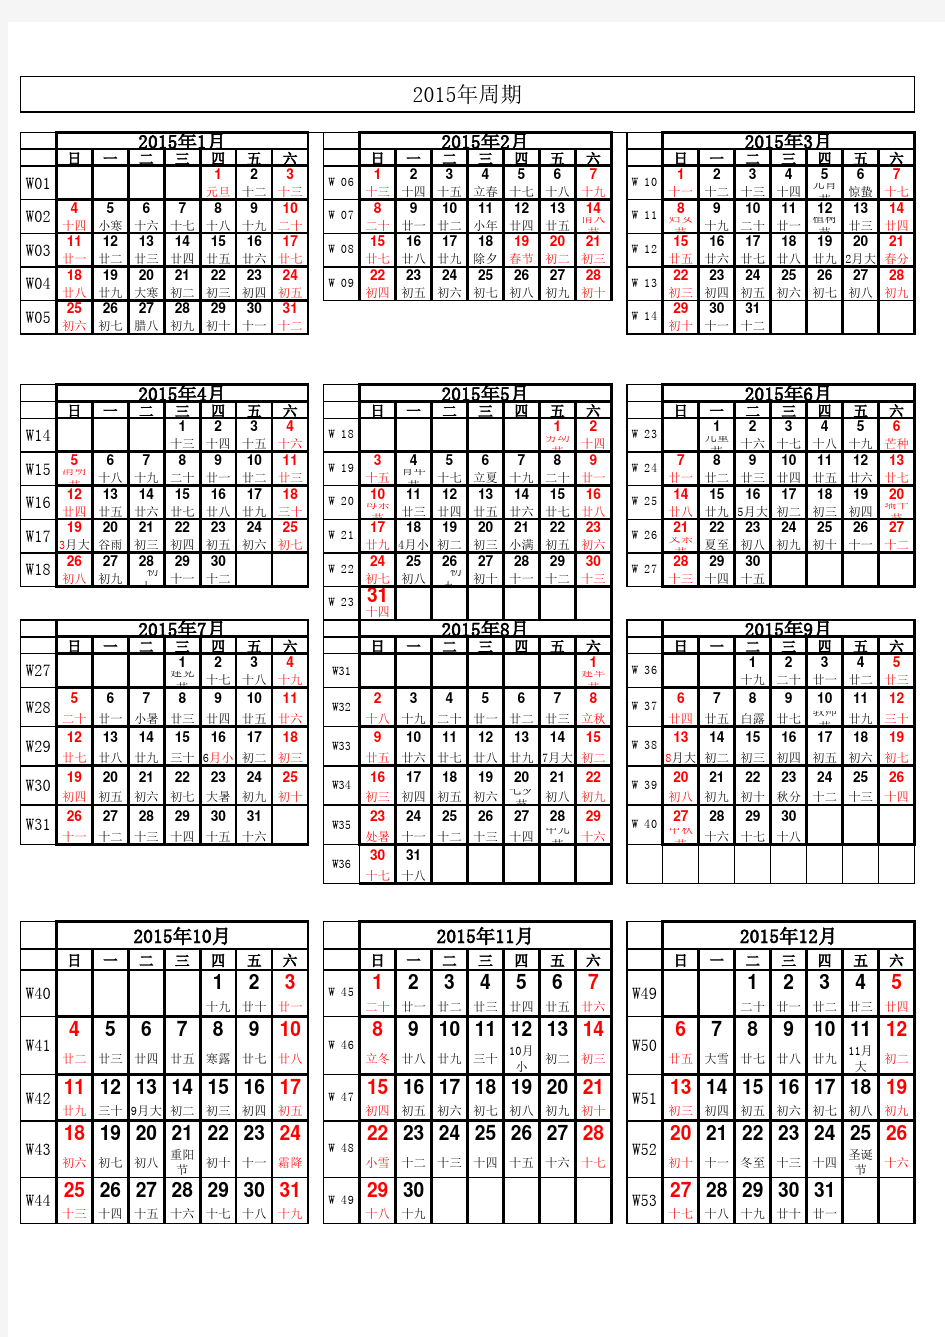 2015年日历表 周期